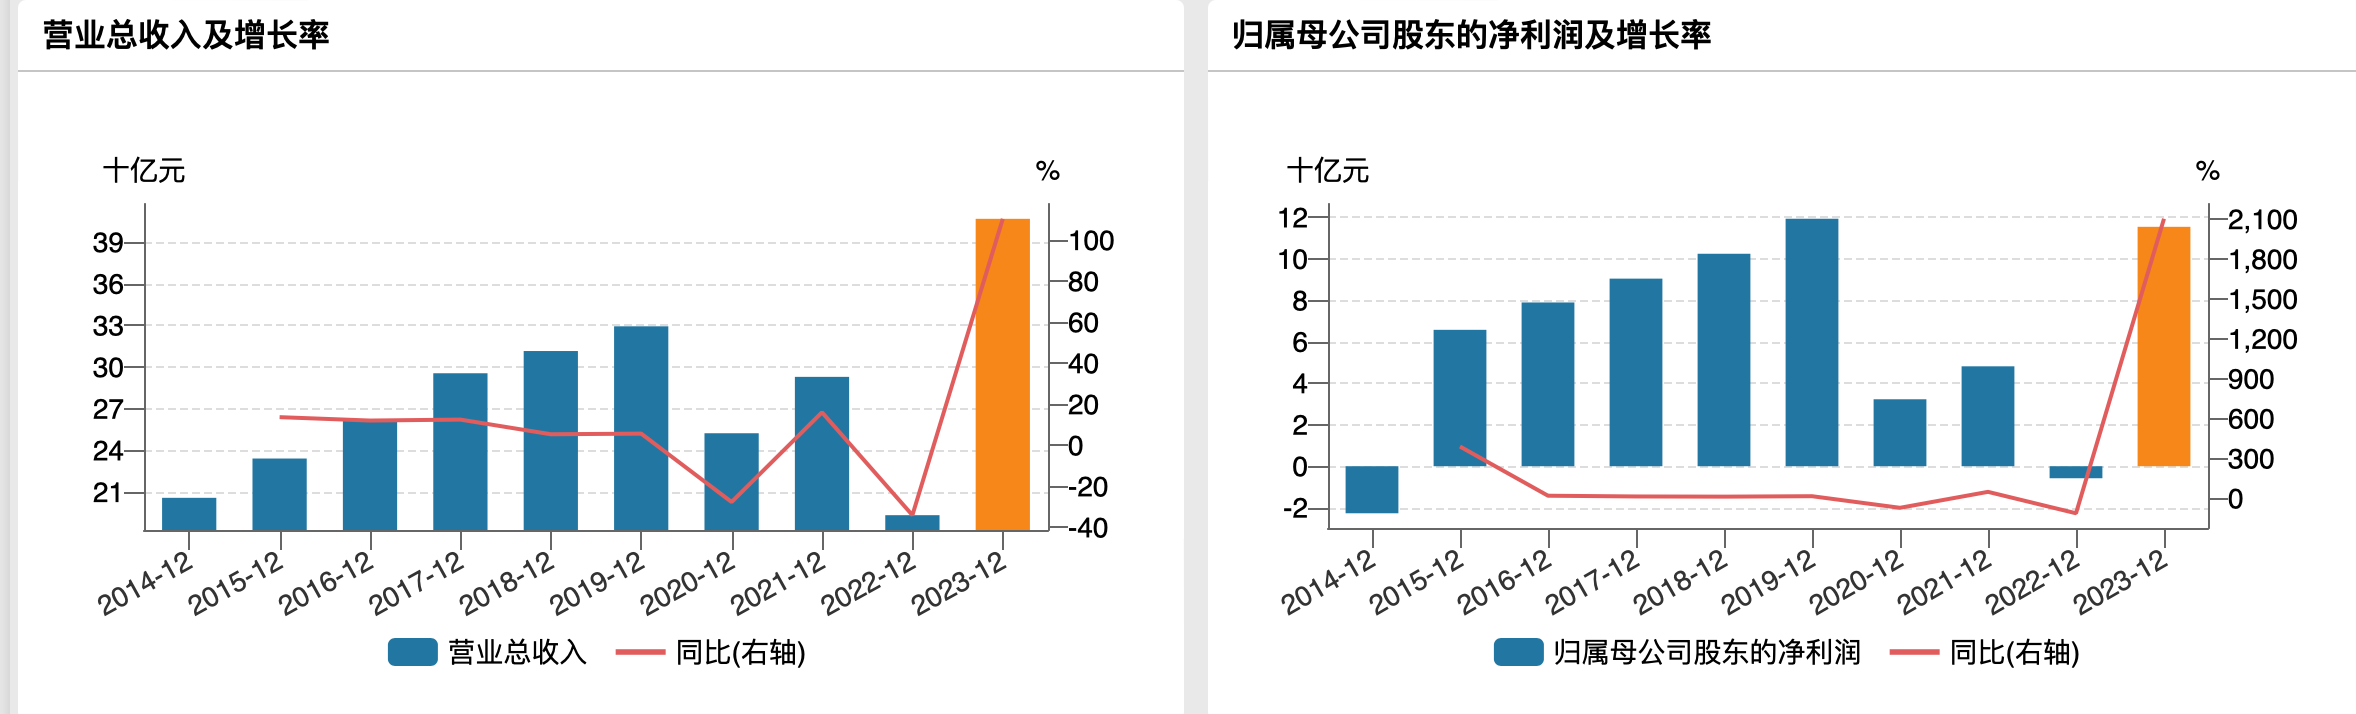 京滬高鐵過往年度業績，來源於wind